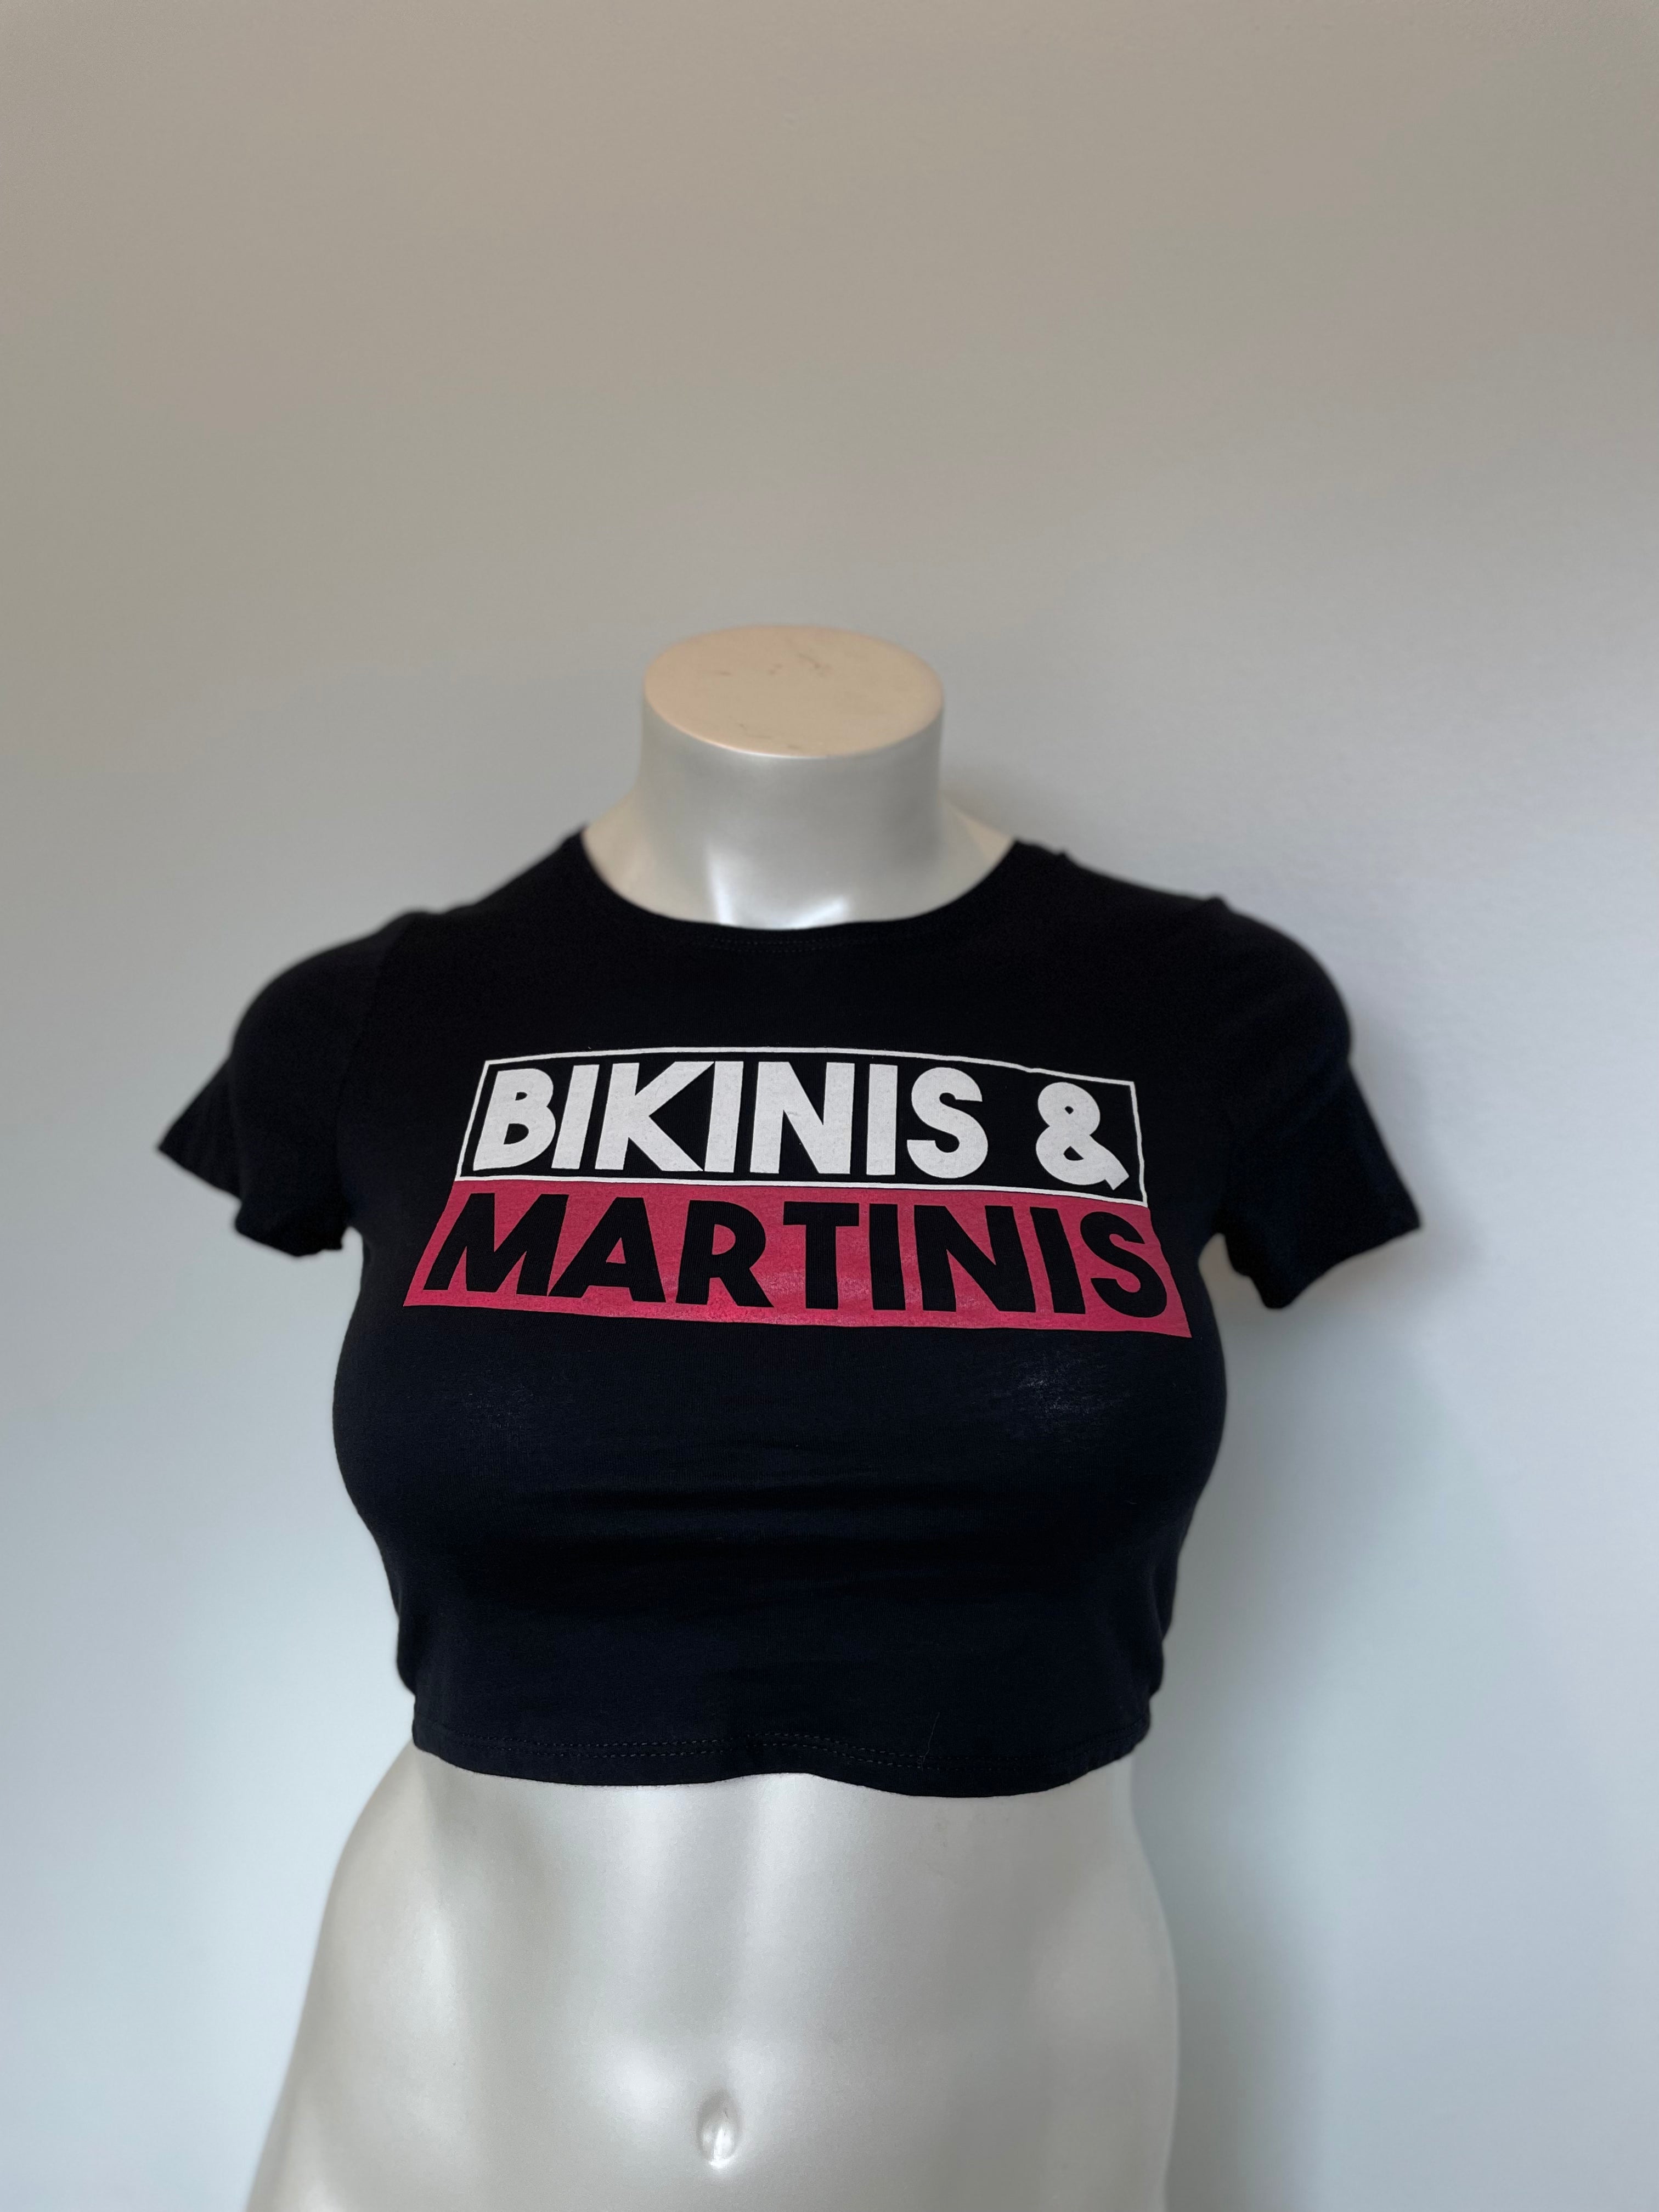 Bikinis and Martinis